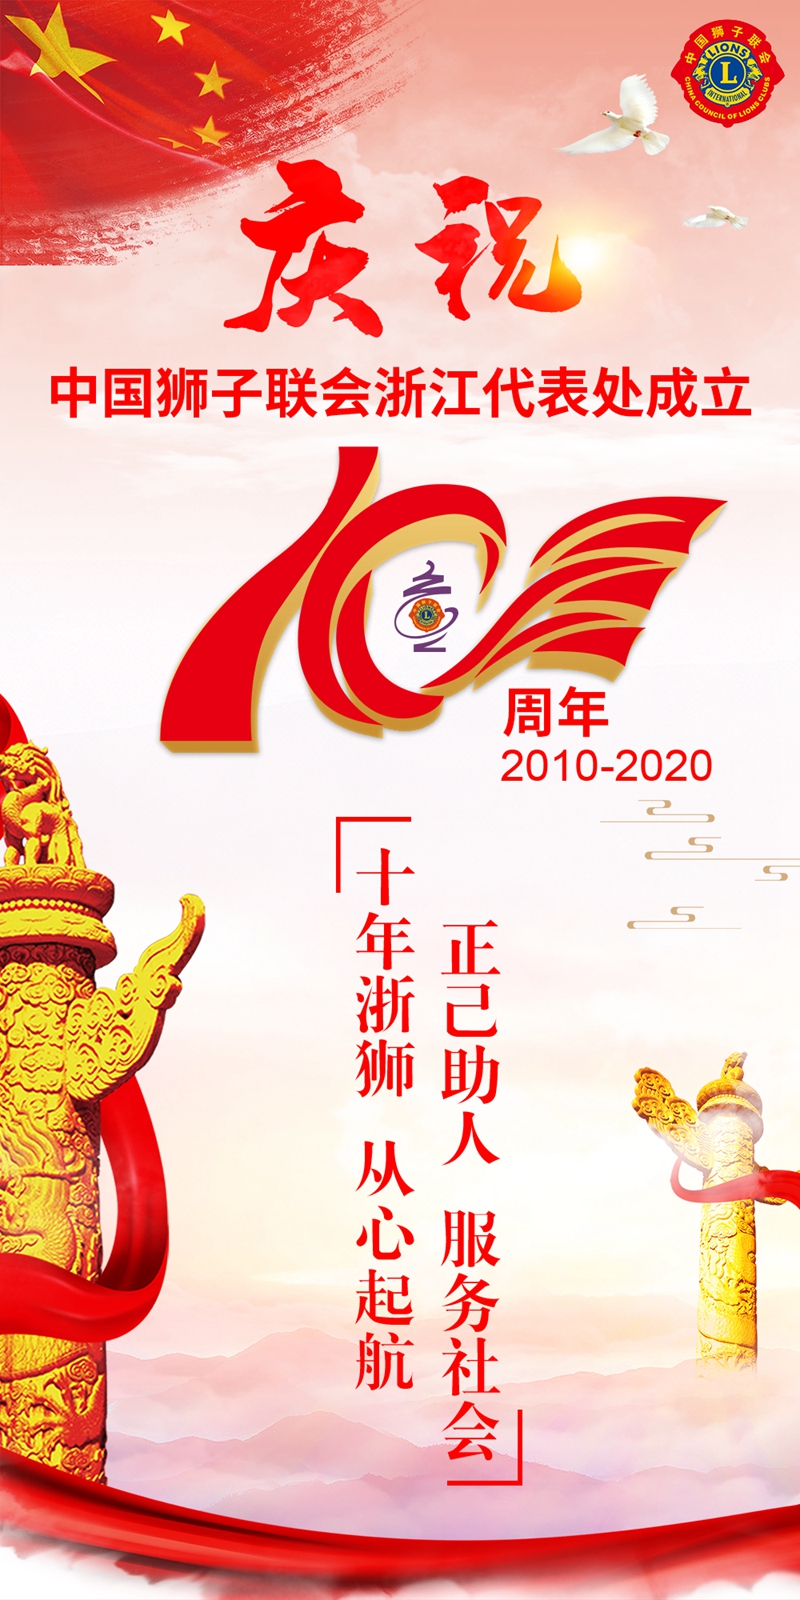 十年浙狮  从心起航——纪念中国狮子联会浙江代表处成立十周年